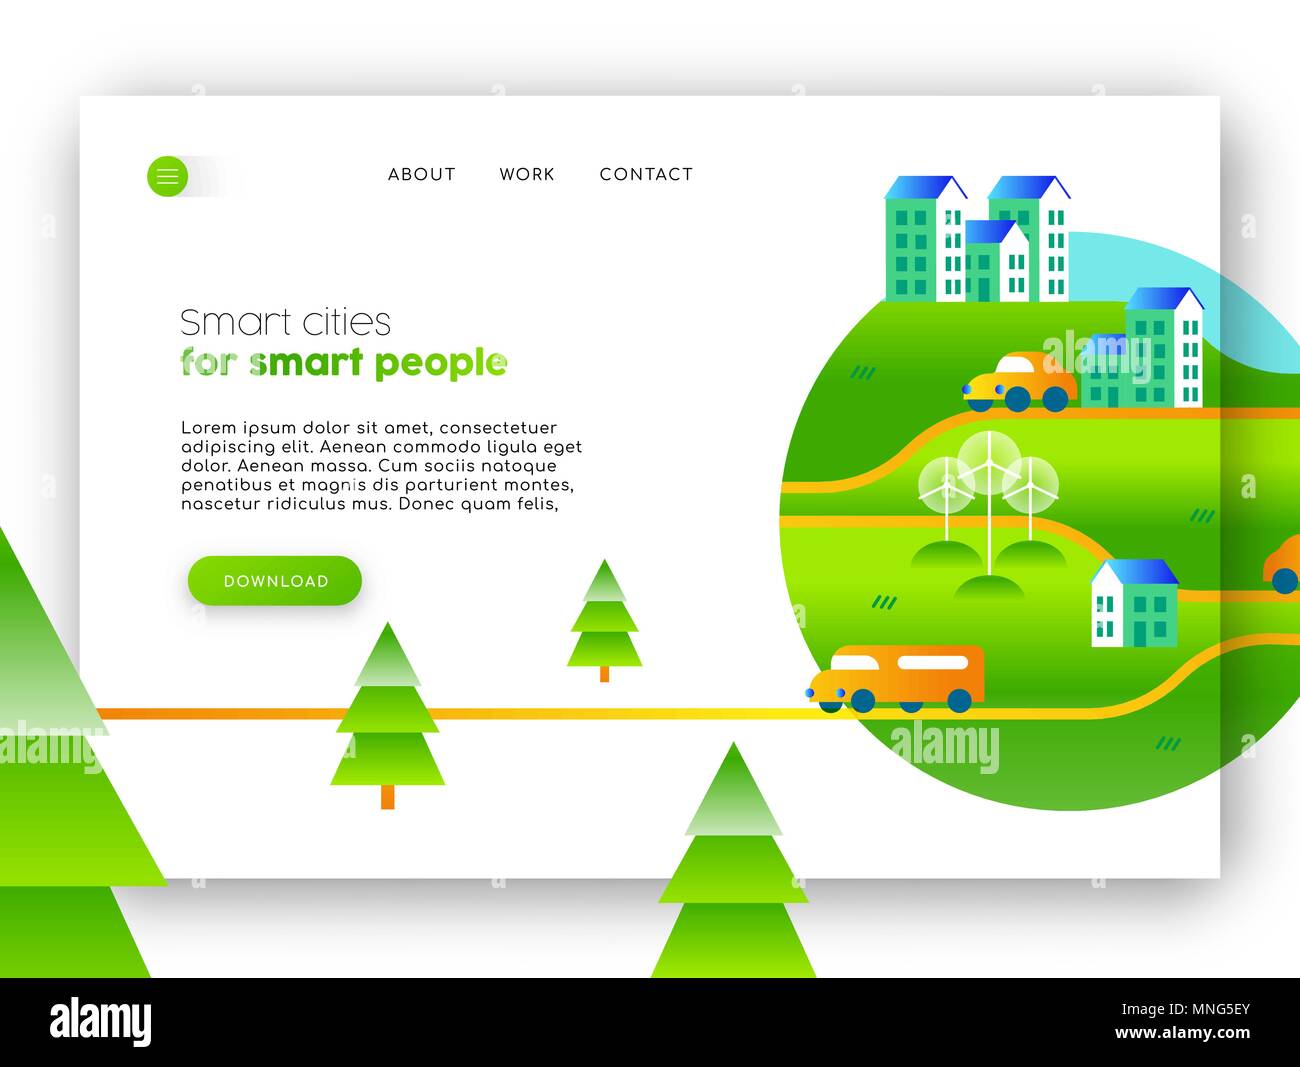 Onlineangebotsseite von Green City Kampagne. Internet web site template ideal für mobile ui mit Eco freundliche Gemeinschaft Abbildung. EPS 10 Vektor. Stock Vektor